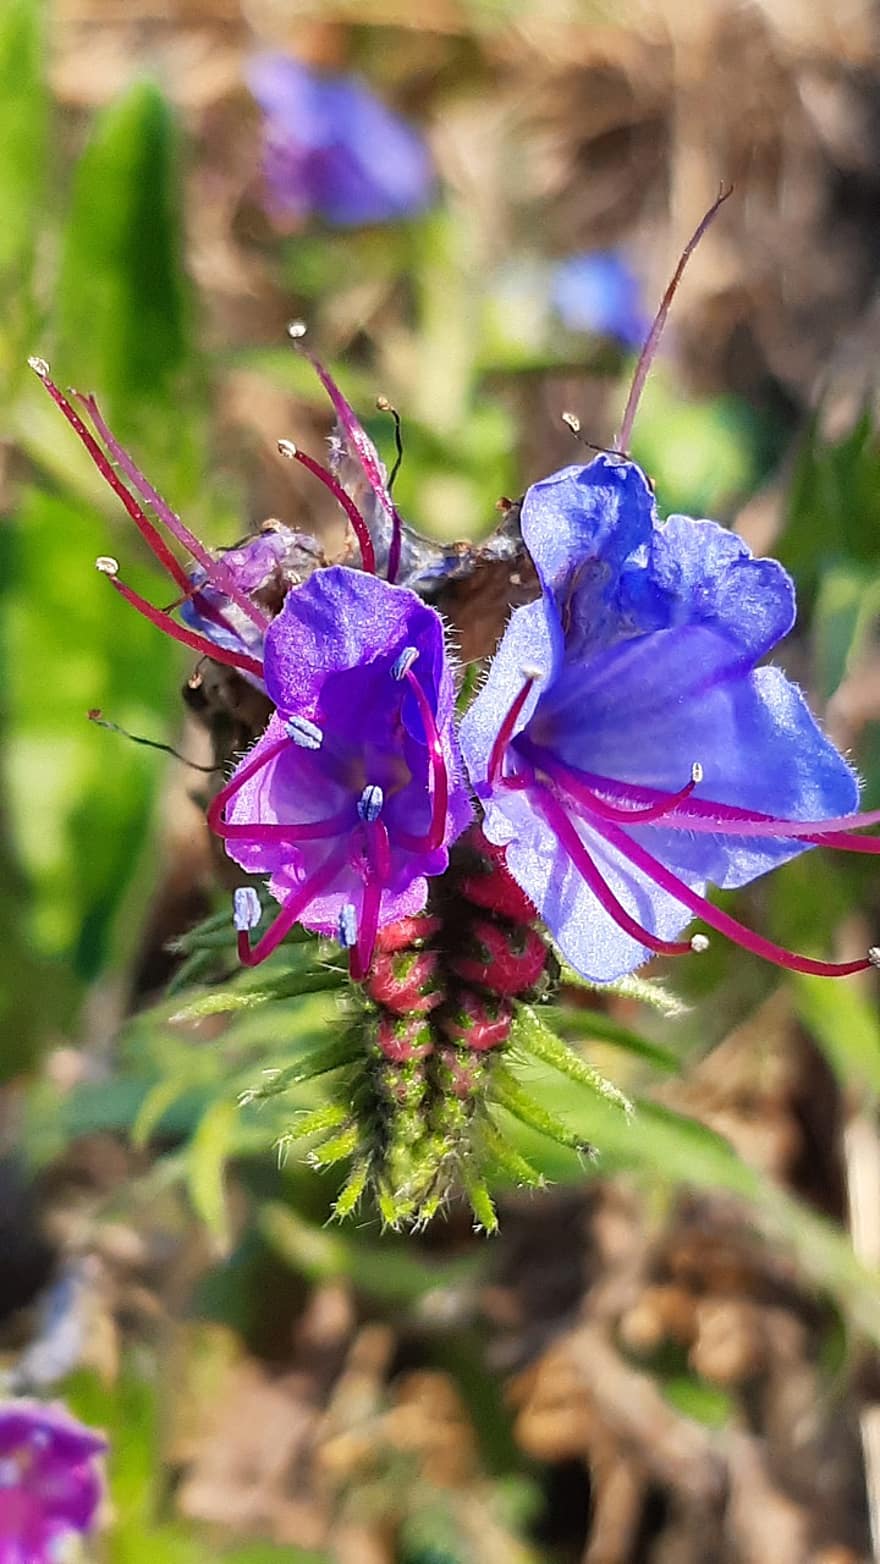 żmija bugloss, kwiaty, roślina, echium vulgare, blueweed, niebieski oset, niebieskie kwiaty, kwiat, dzikie kwiaty, Natura, podejście